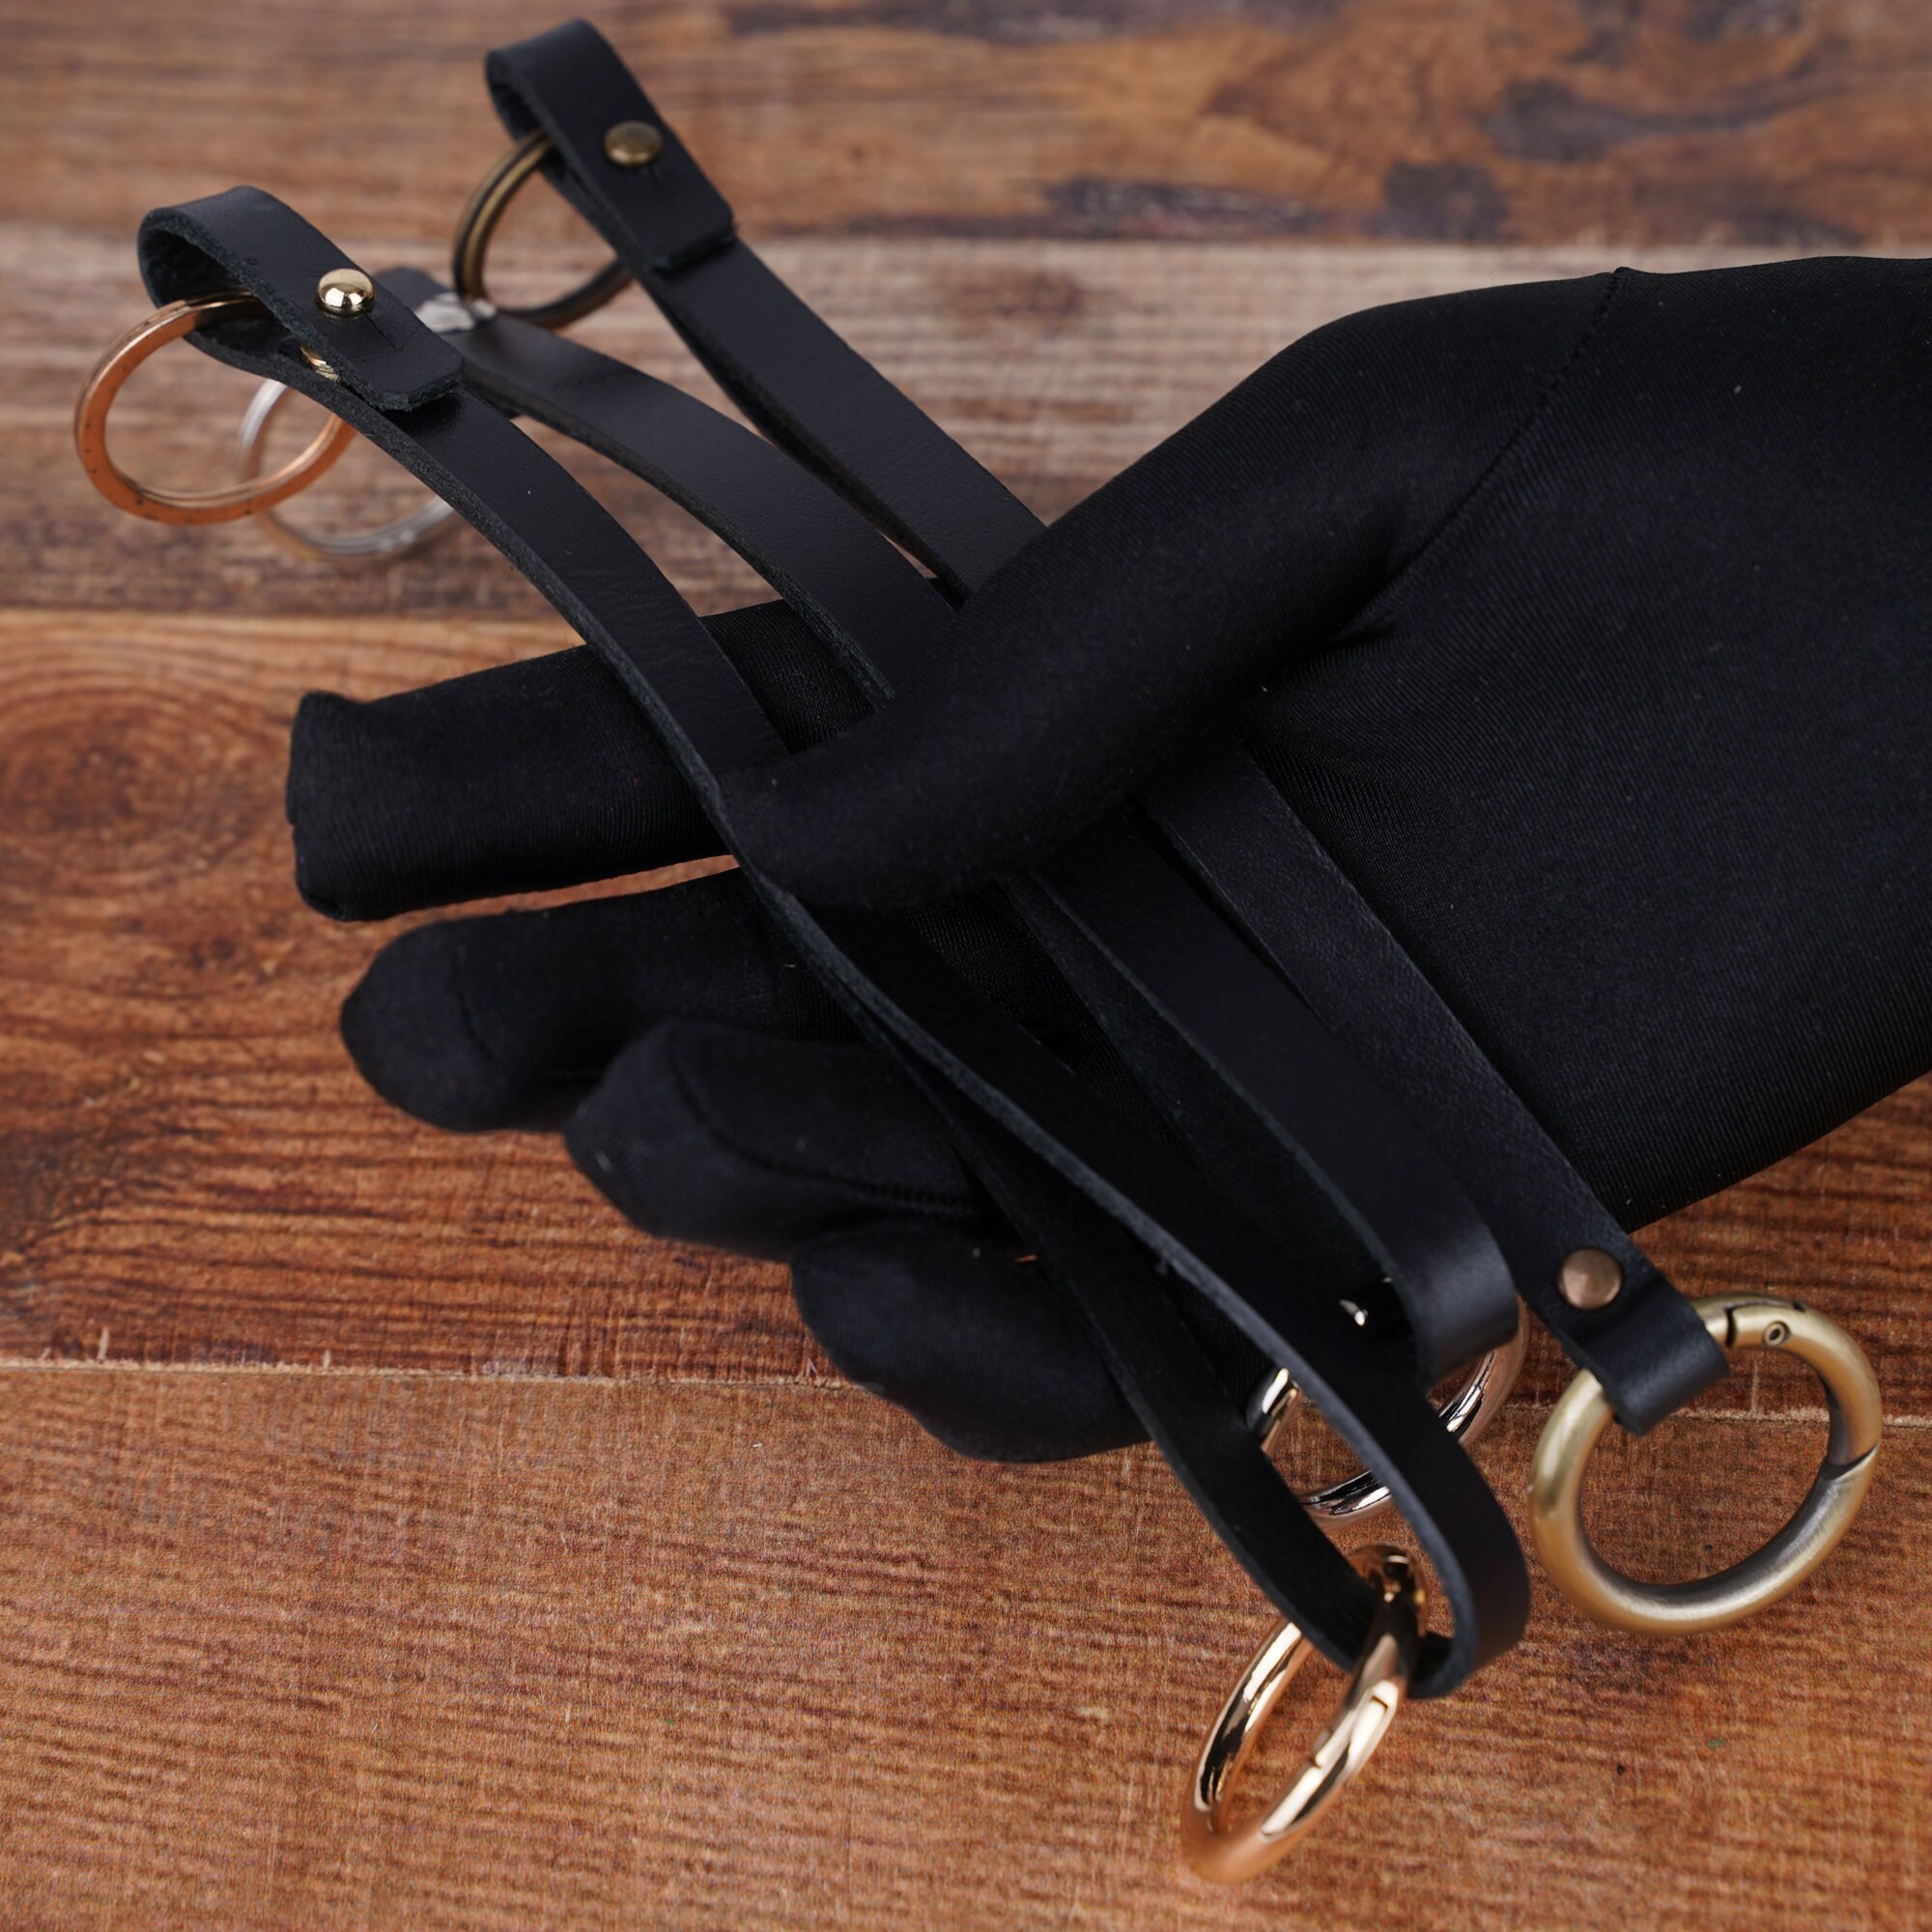 Porte-clés avec une lanière en cuir pratique - noir, ACCESSOIRES